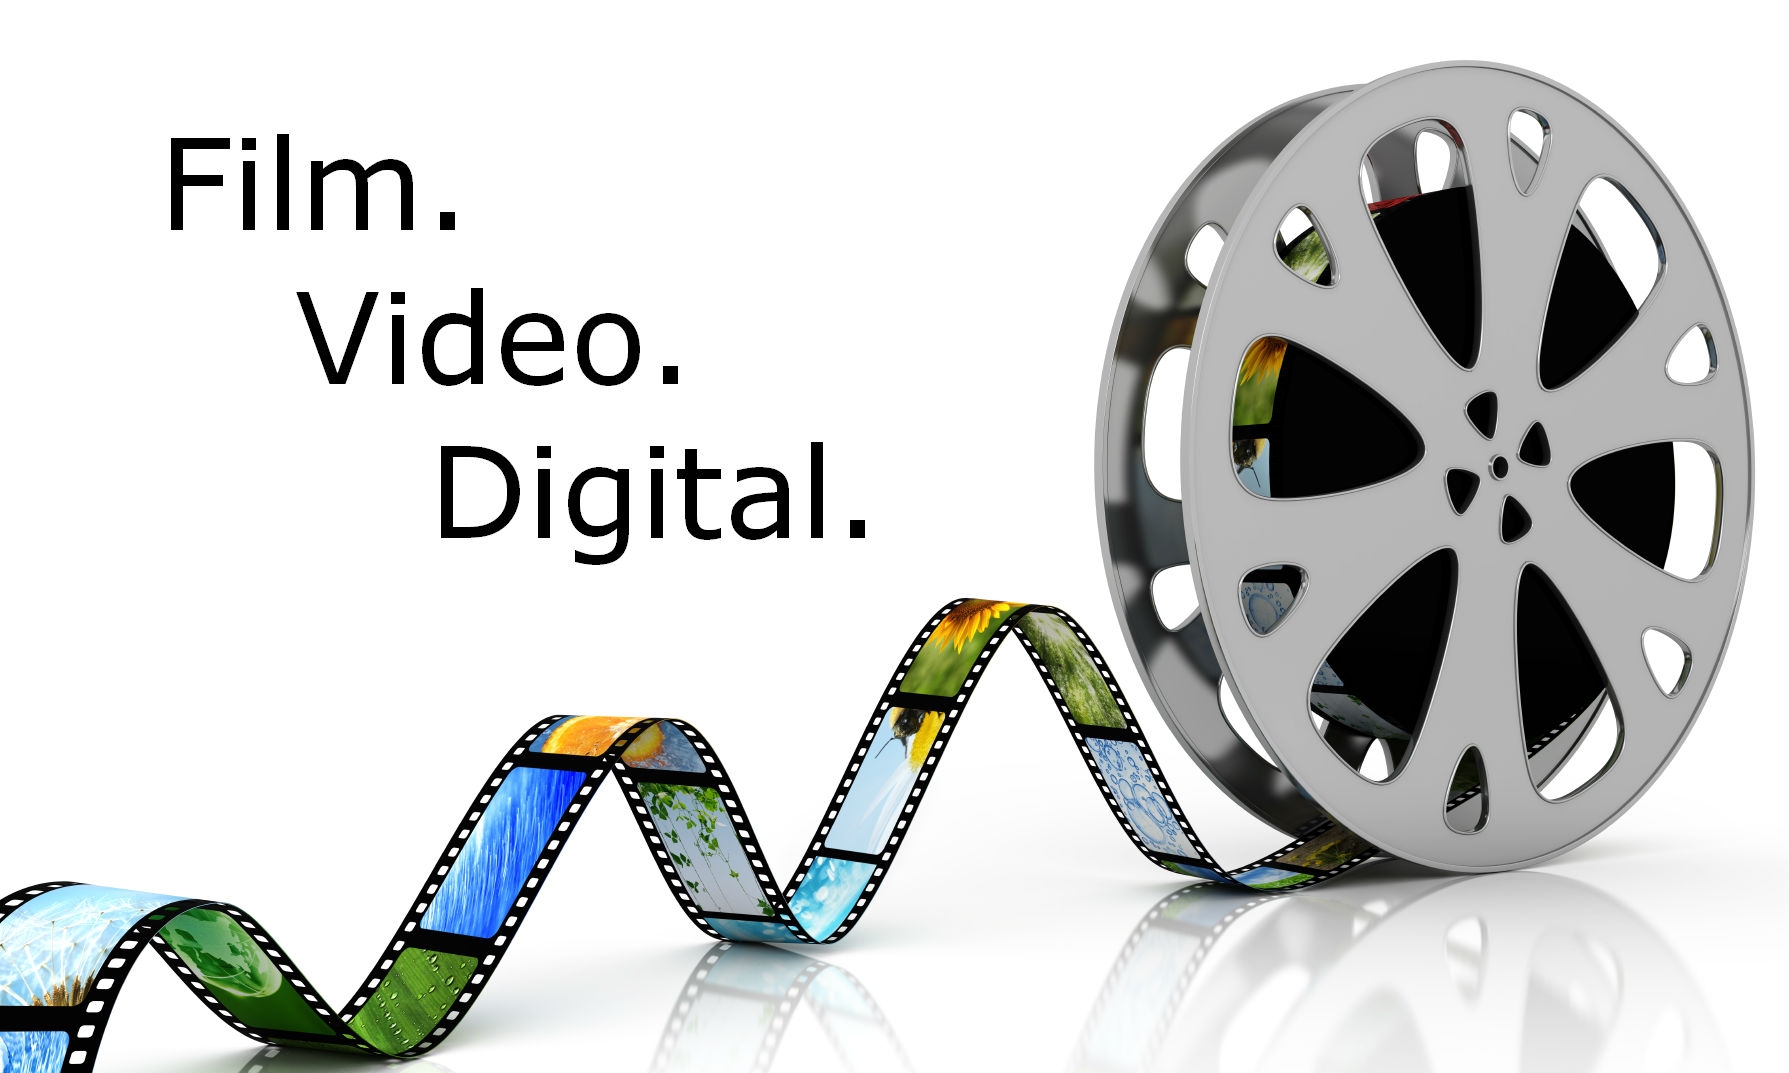 (c) Film-video-digitalisieren.de